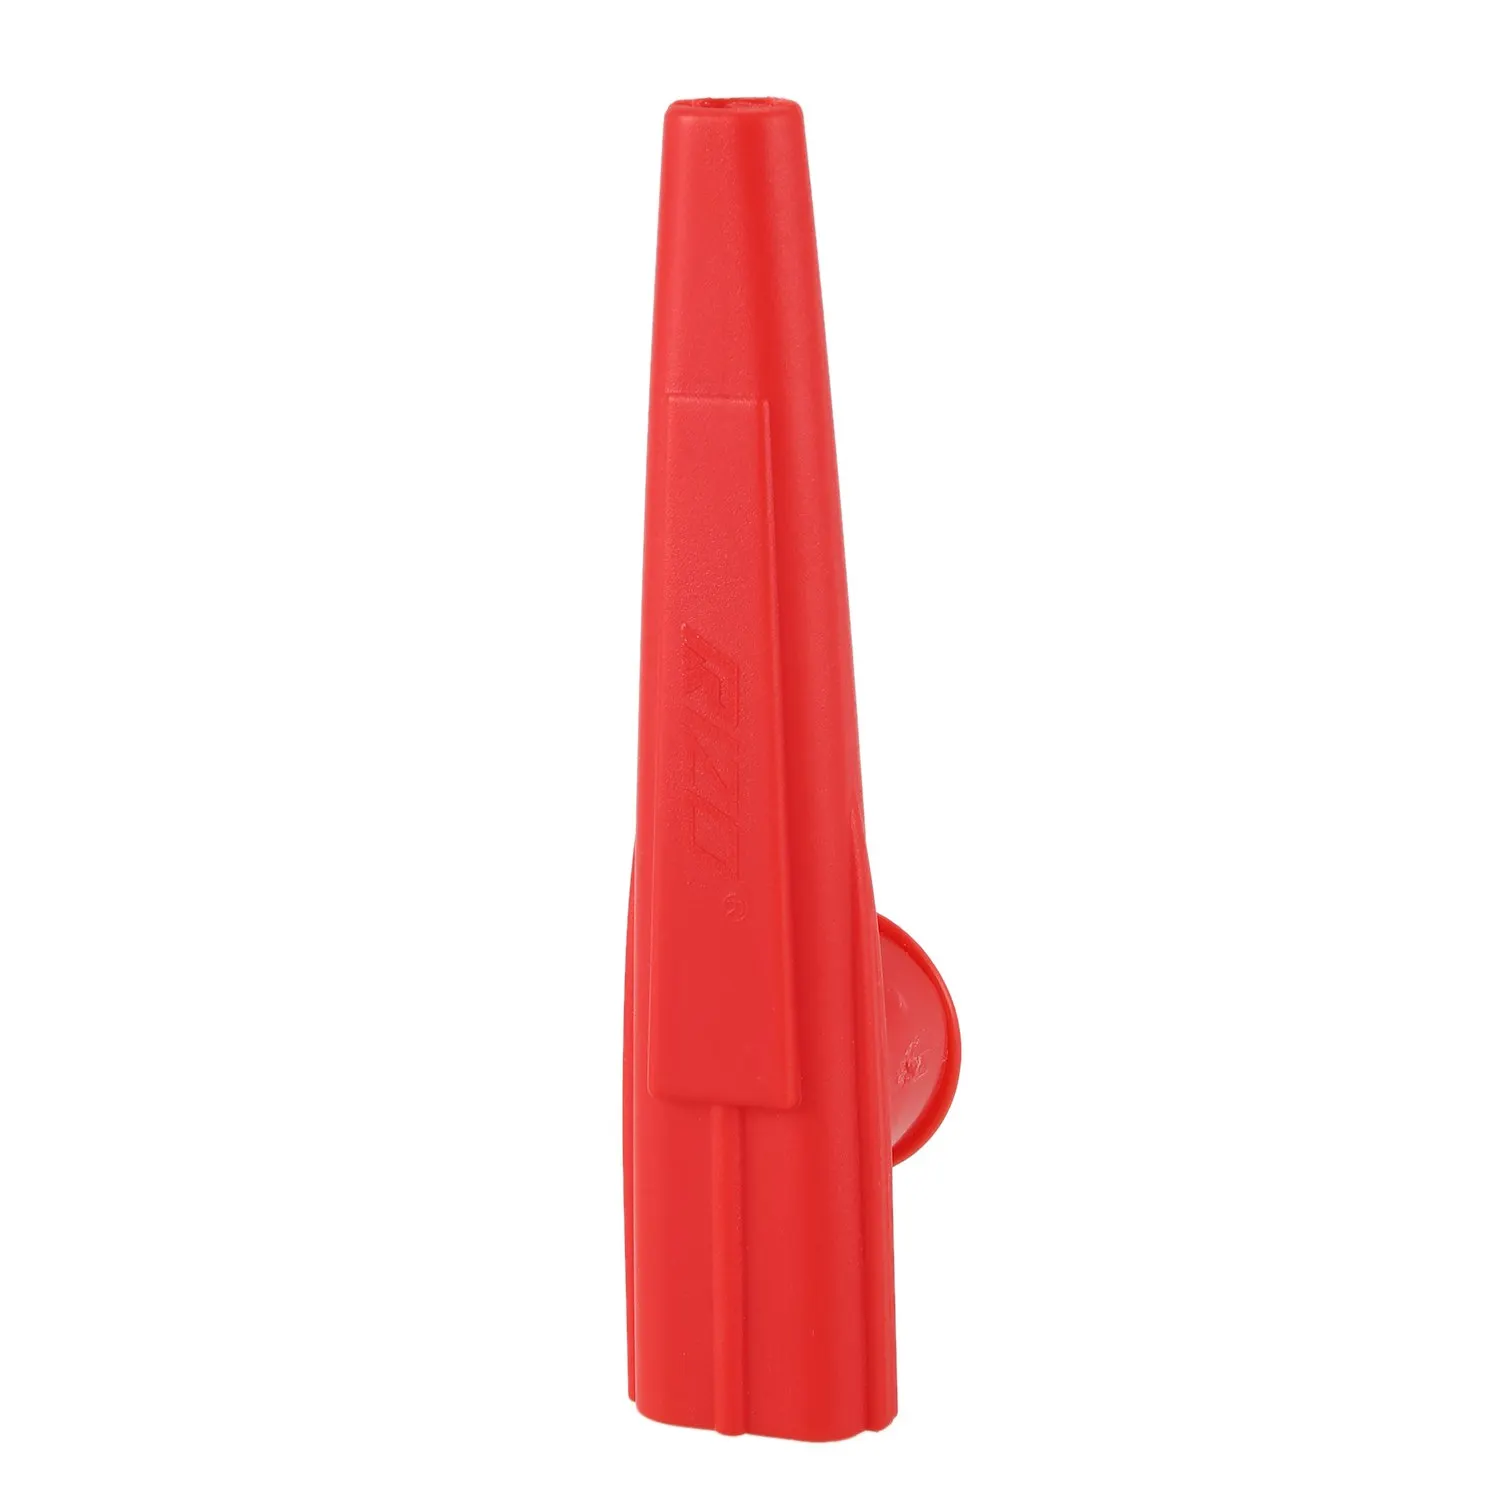 BMDT-детские игрушки kazoo пластик красного цвета, упаковка из 2